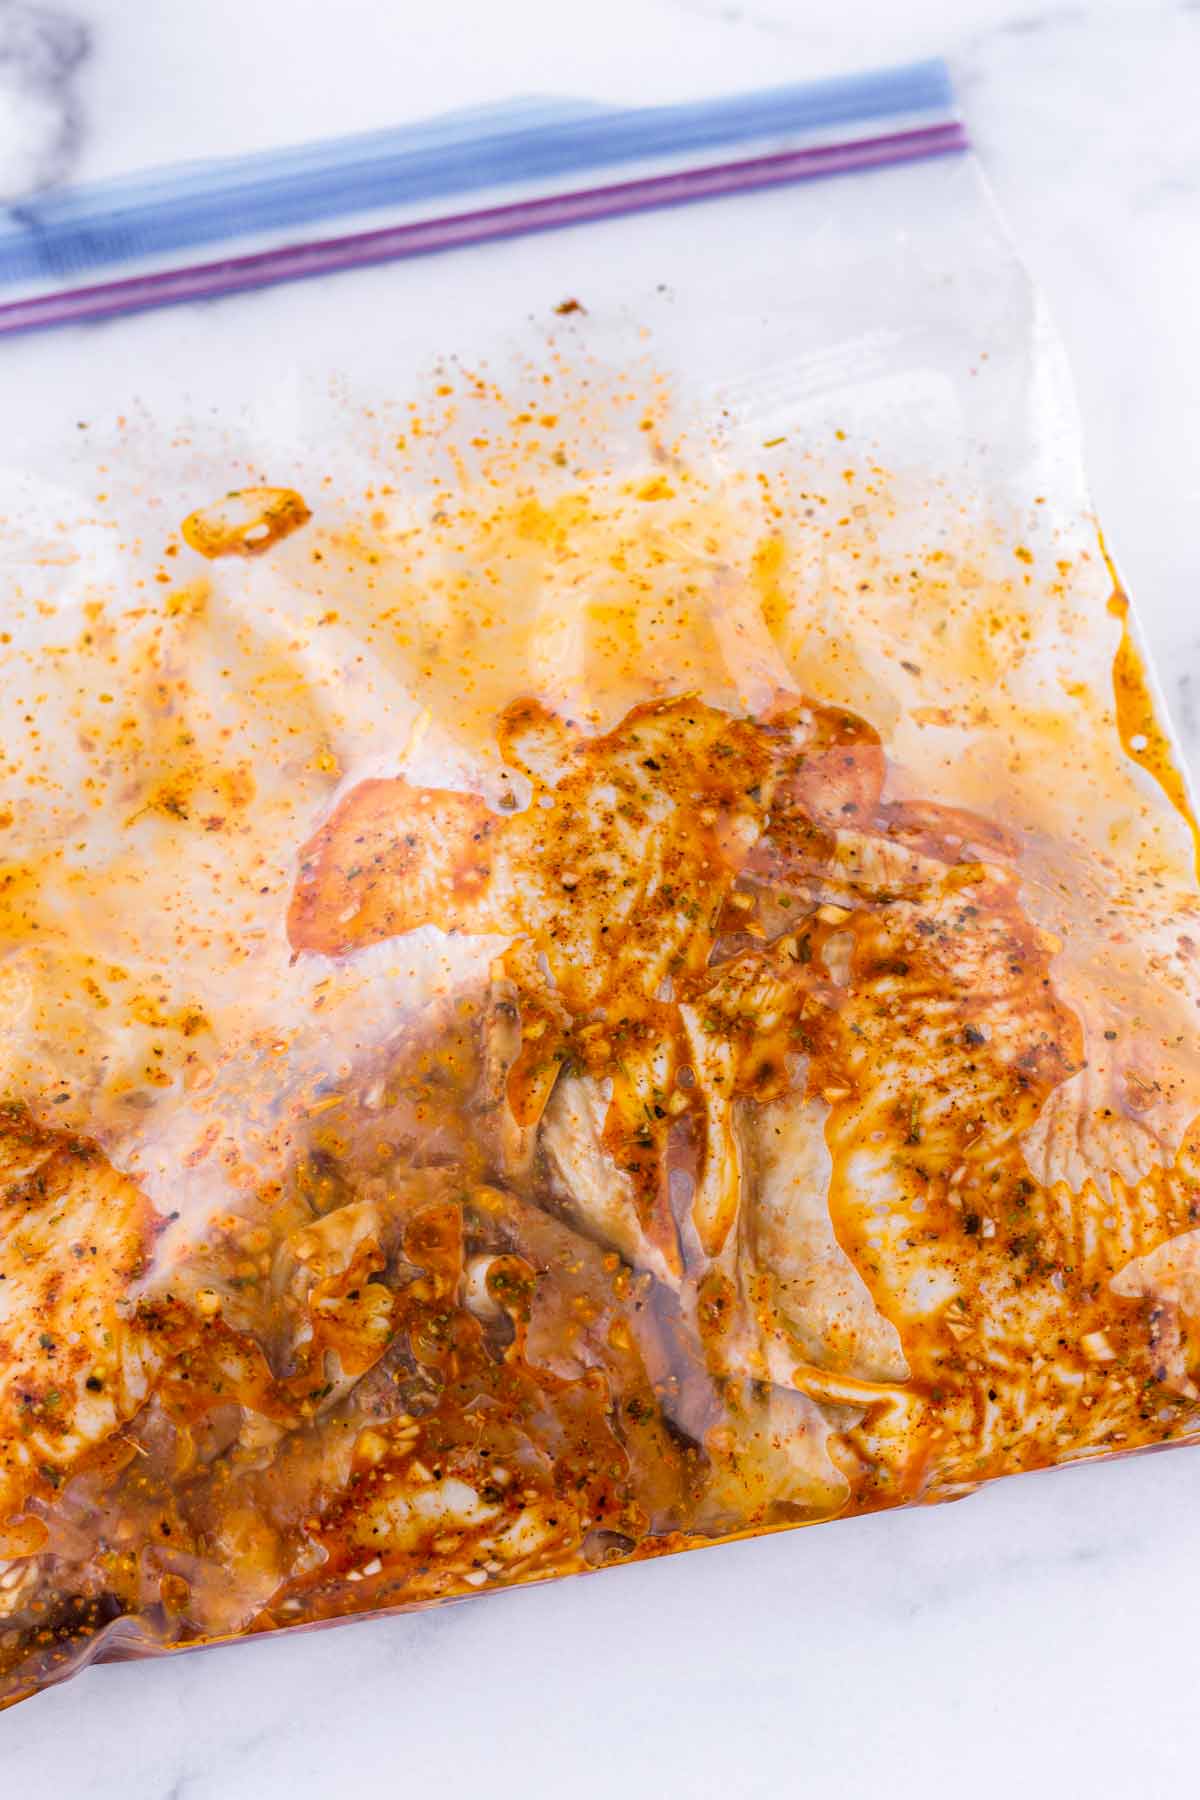 marinade for the chicken in ziploc bag